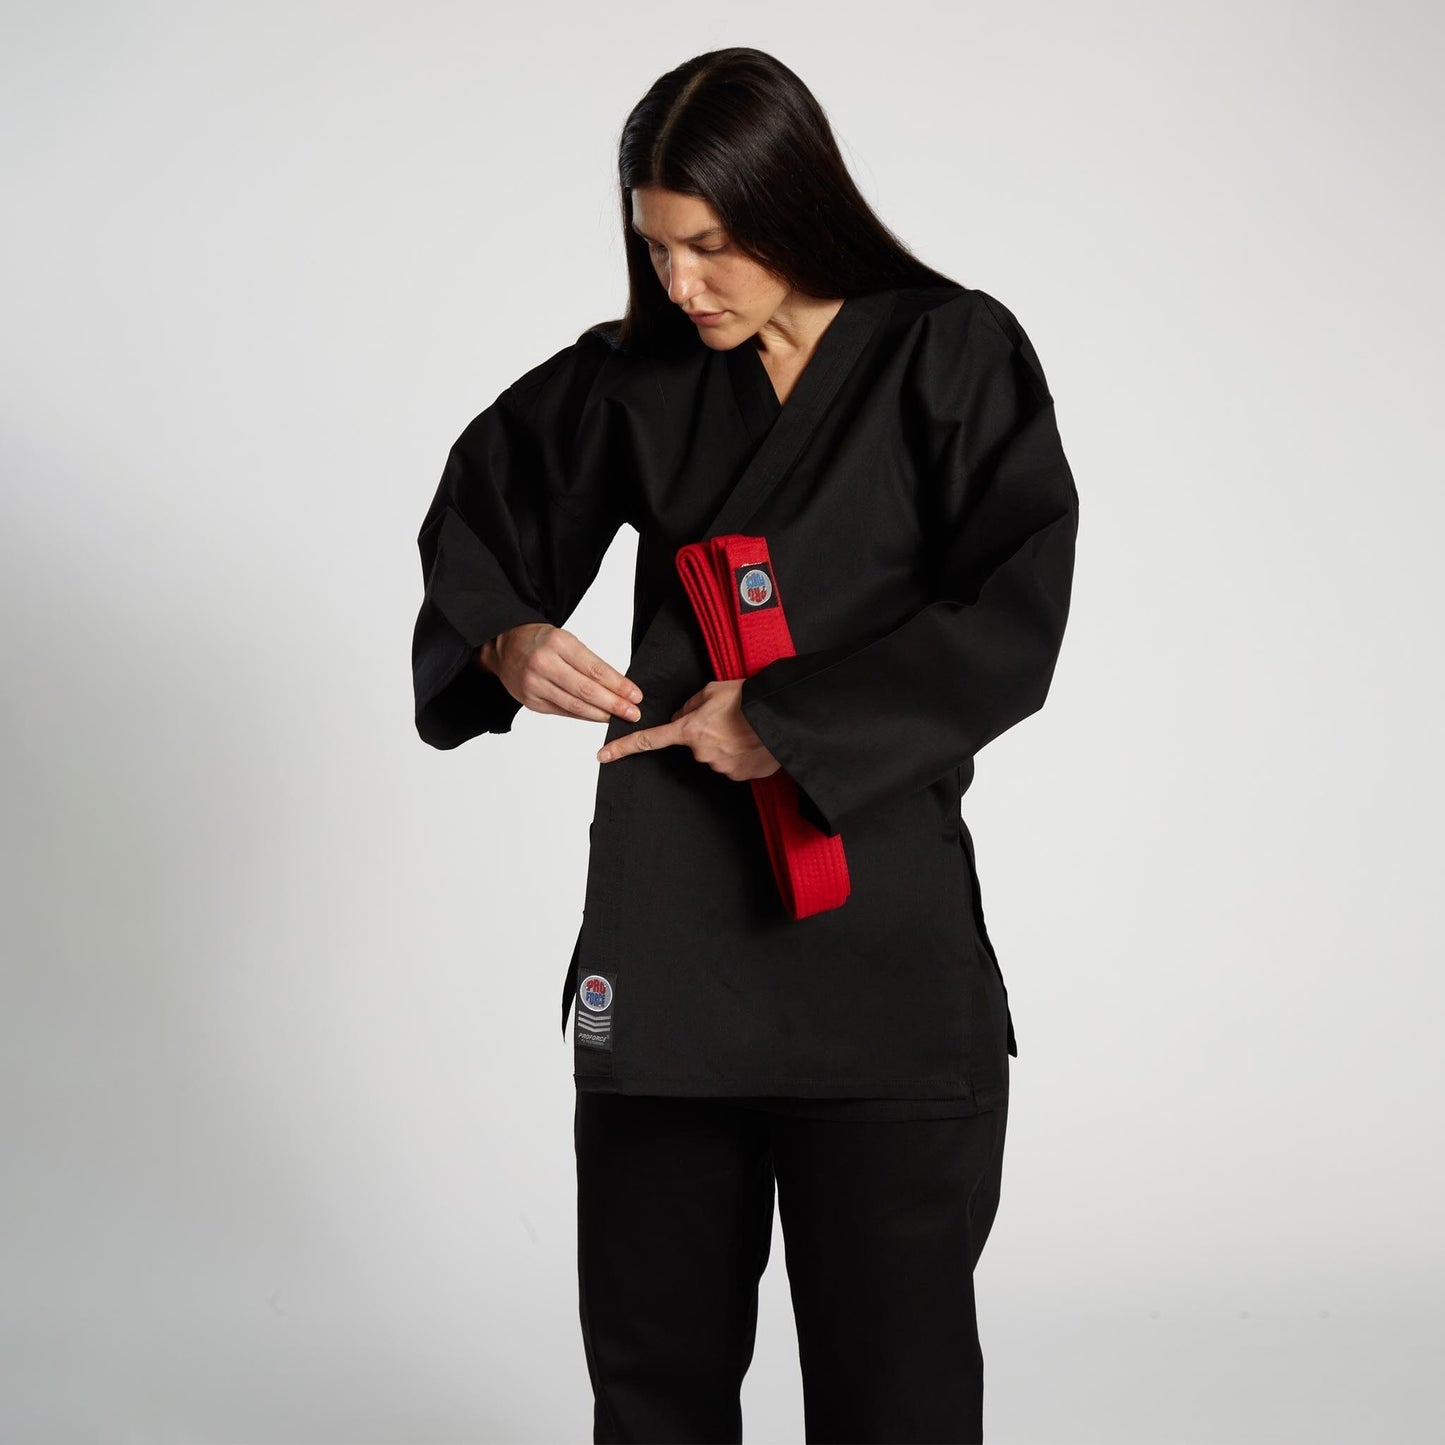 ProForce 6 oz. Karate Uniform (Elastic Drawstring) - 55/45 Blend - With Free White Belt - Violent Art Shop